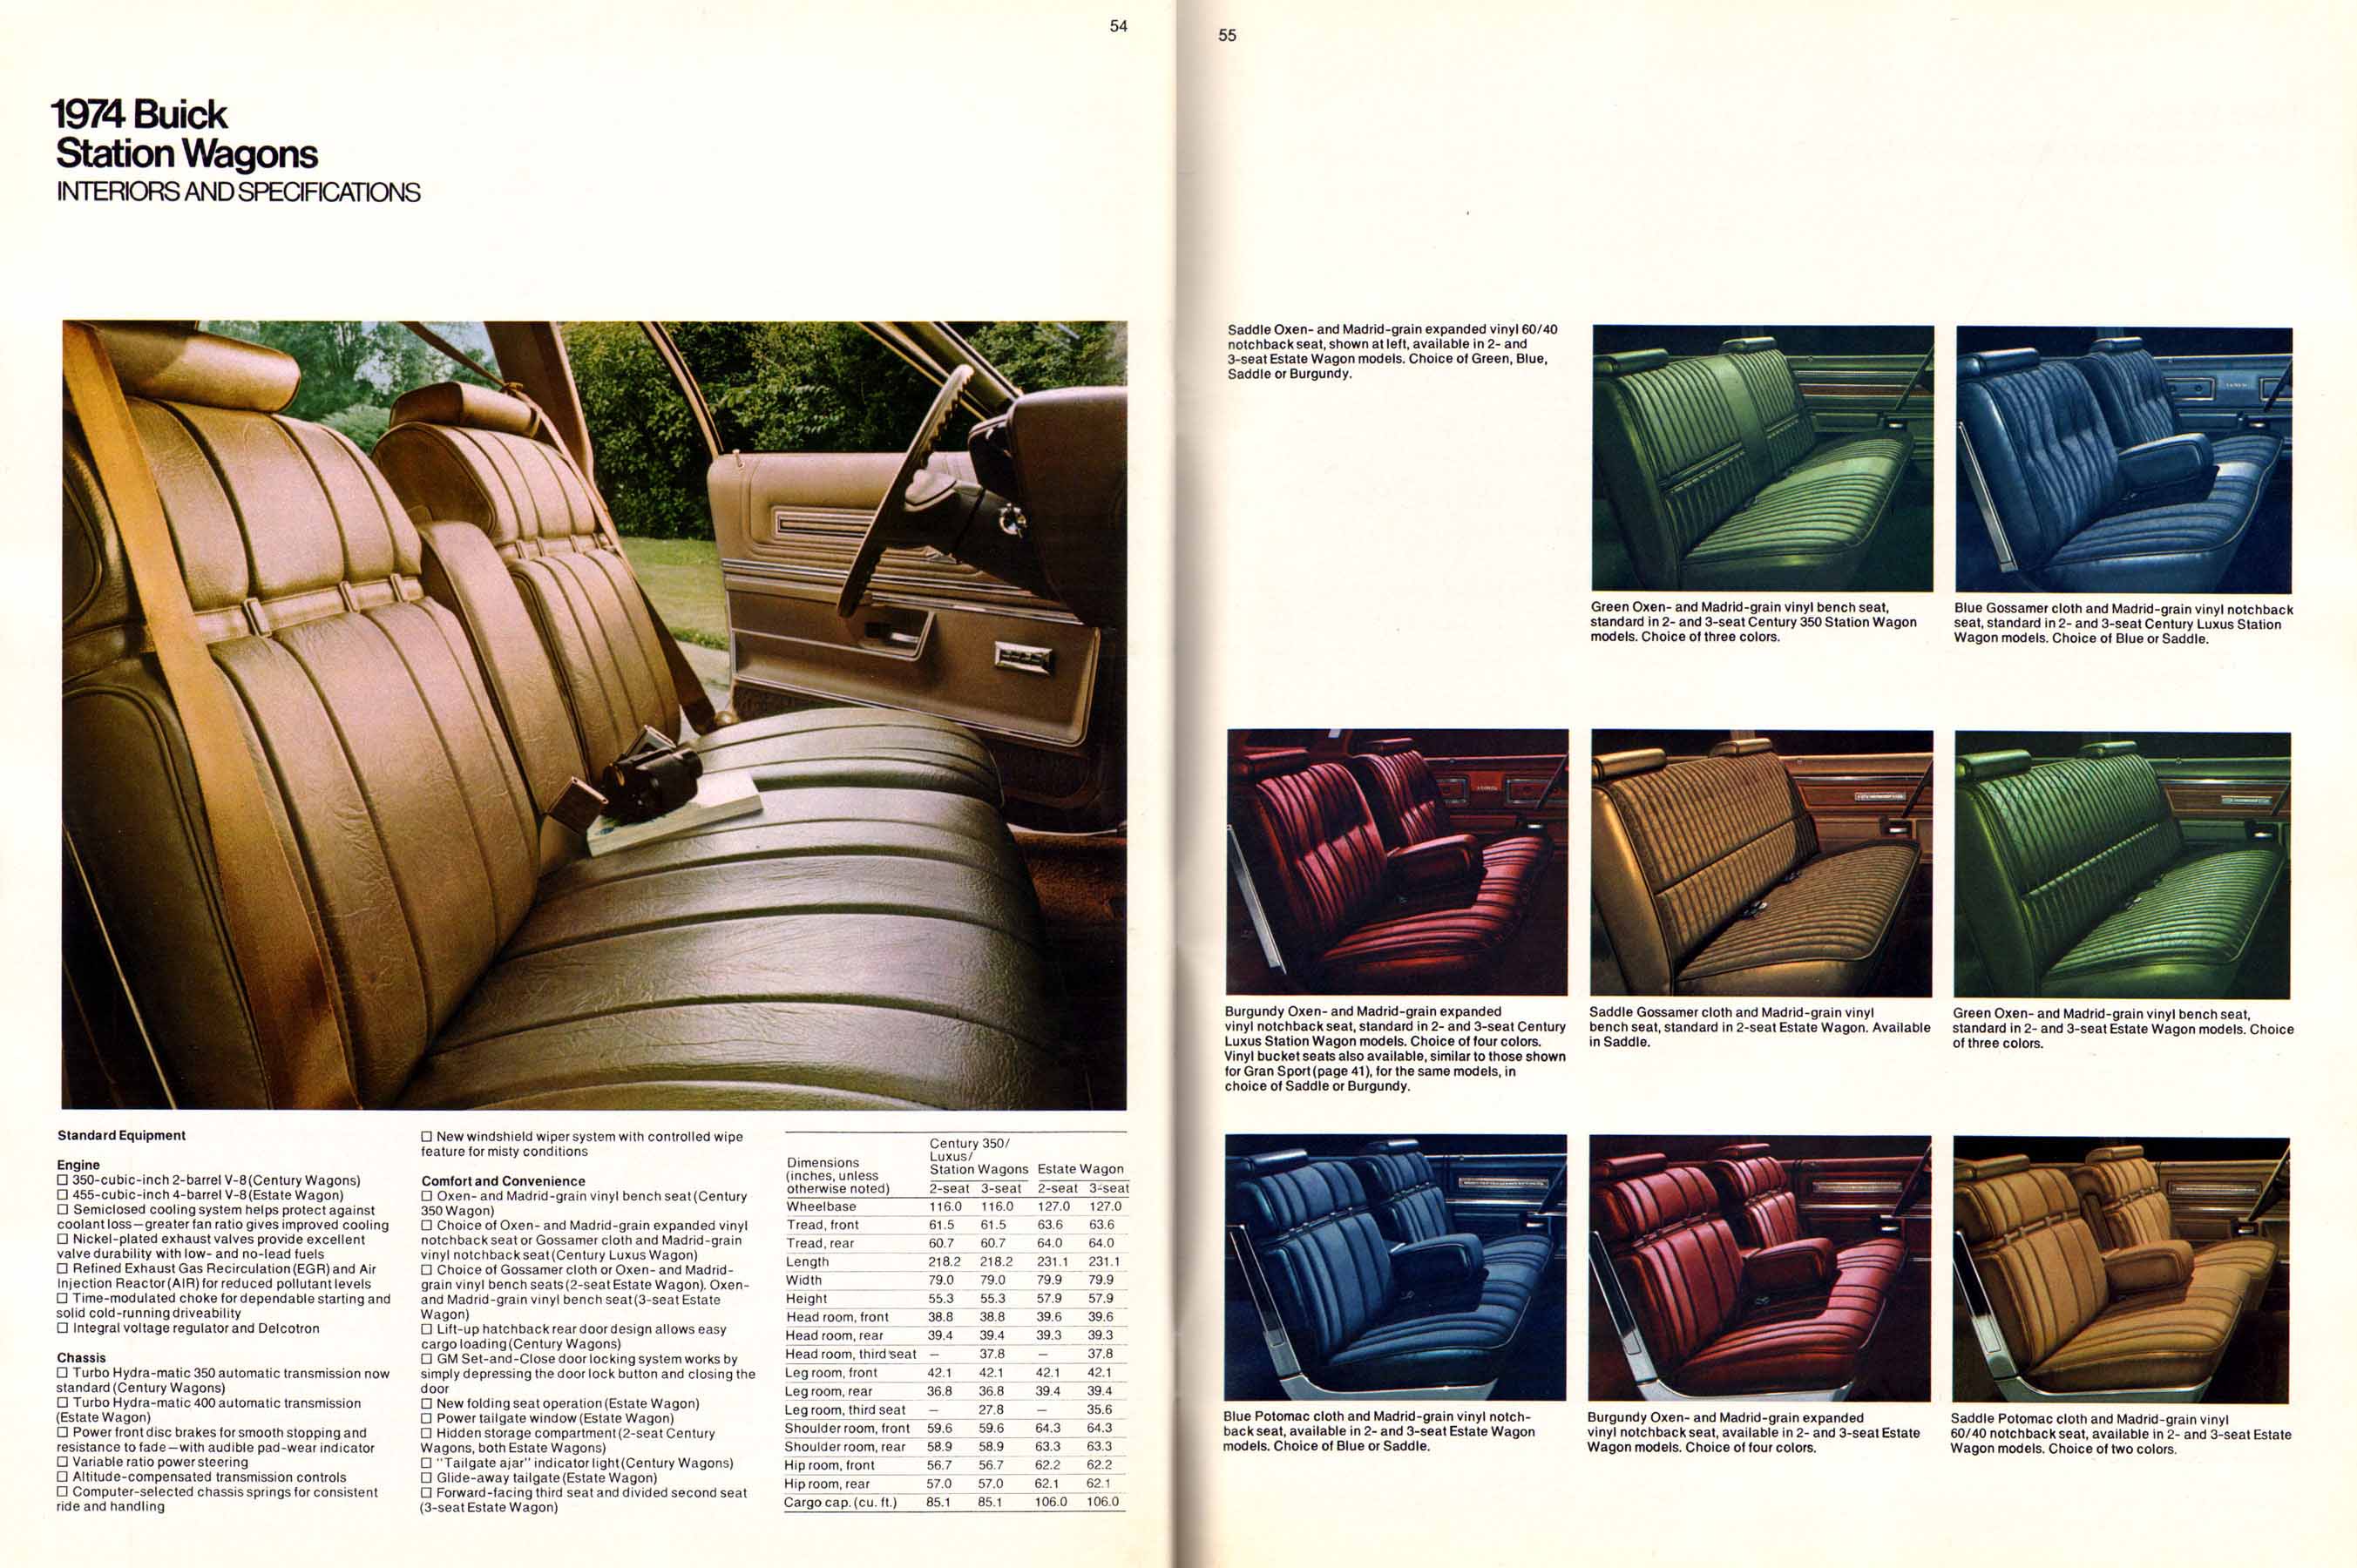 1974 Buick Full Line-54-55